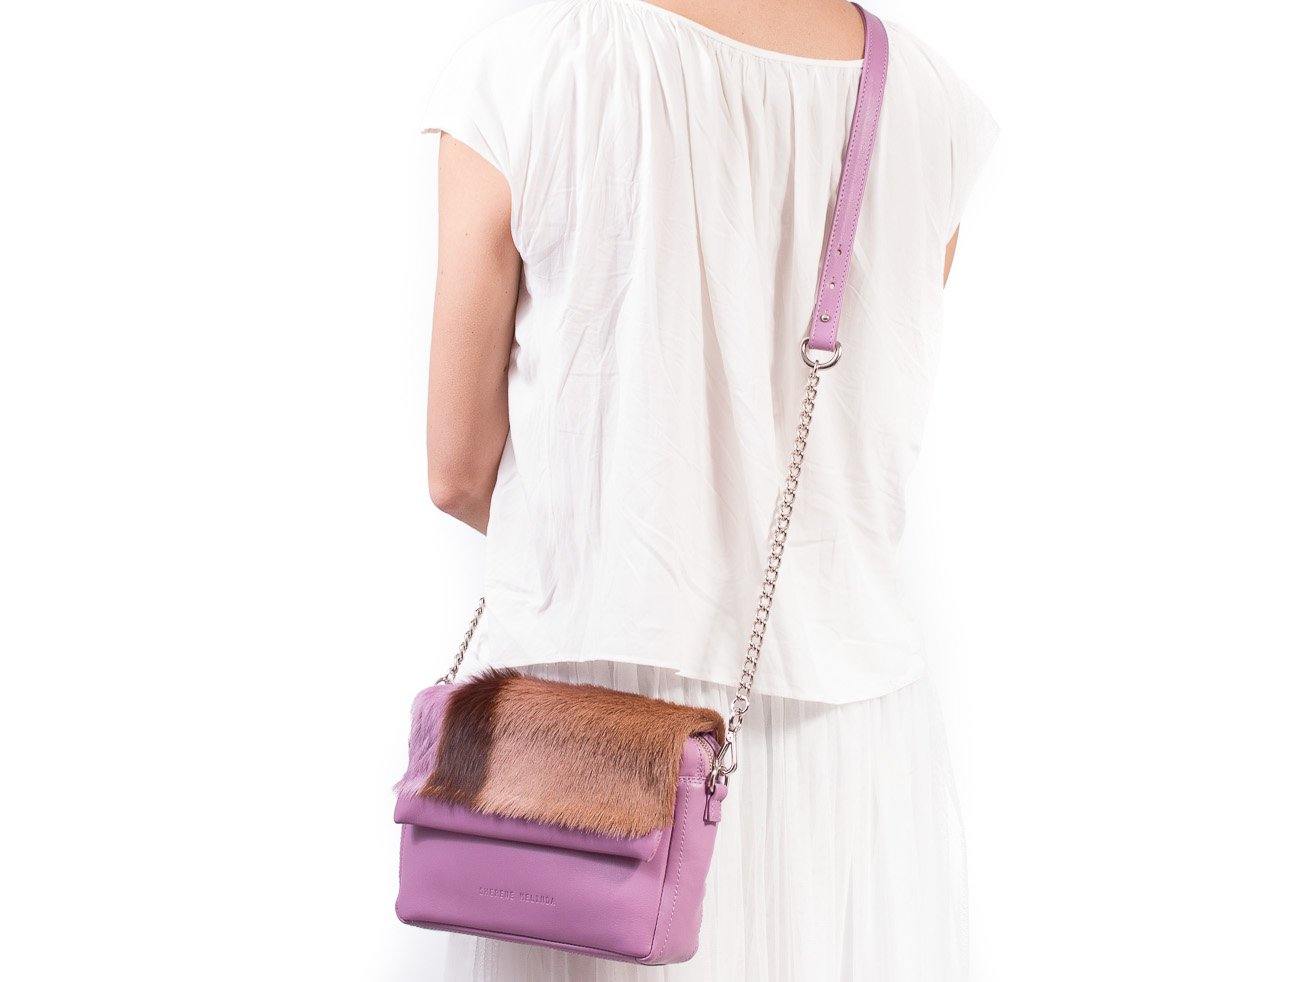 Lavender Shoulder Bag with a stripe - SHERENE MELINDA